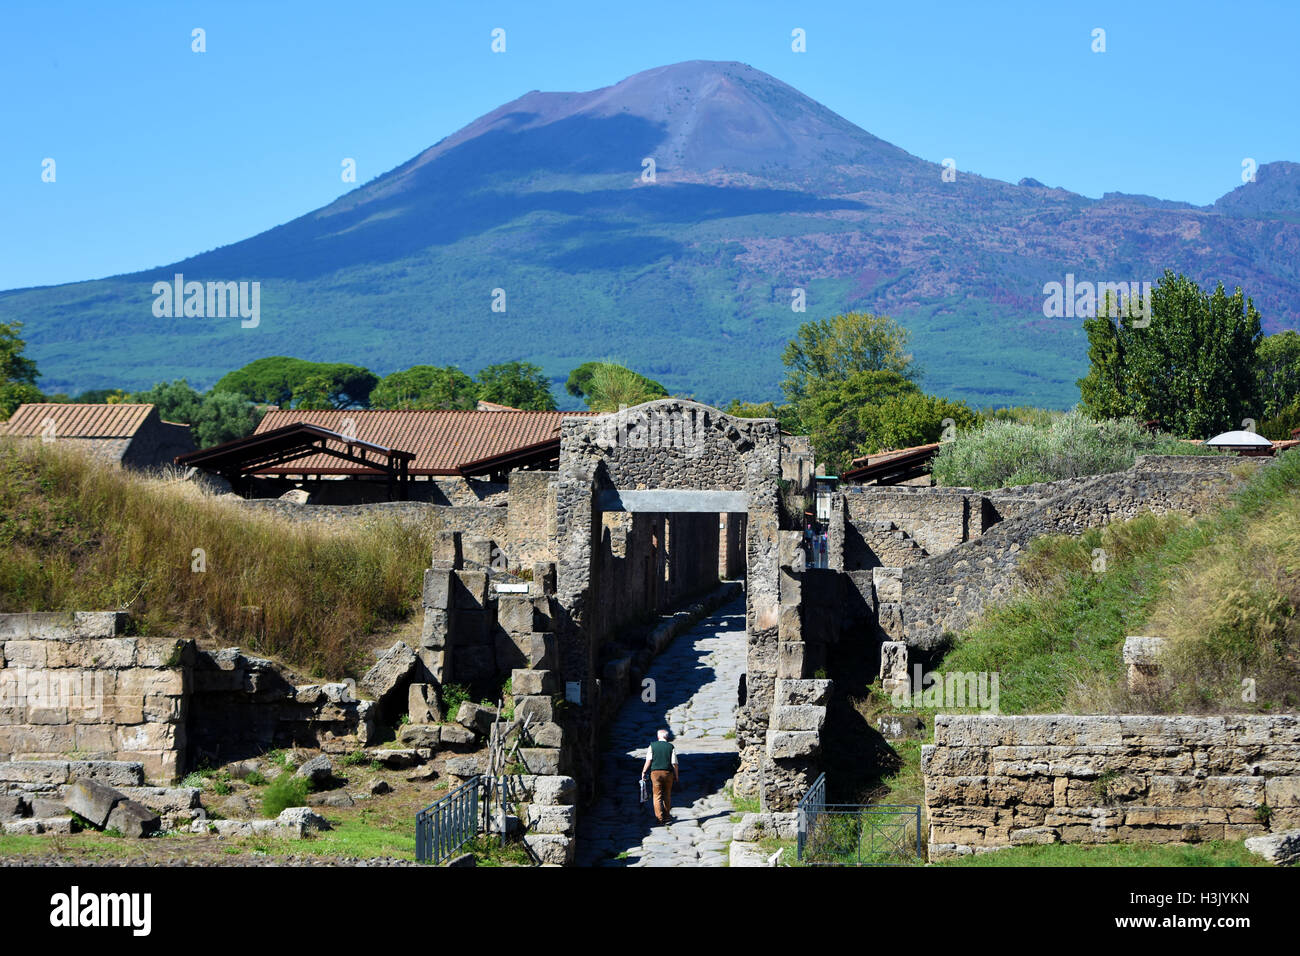 Sul Vesuvio e le rovine romane, i corpi e gli affreschi di Pompei, Italia. Foto Stock